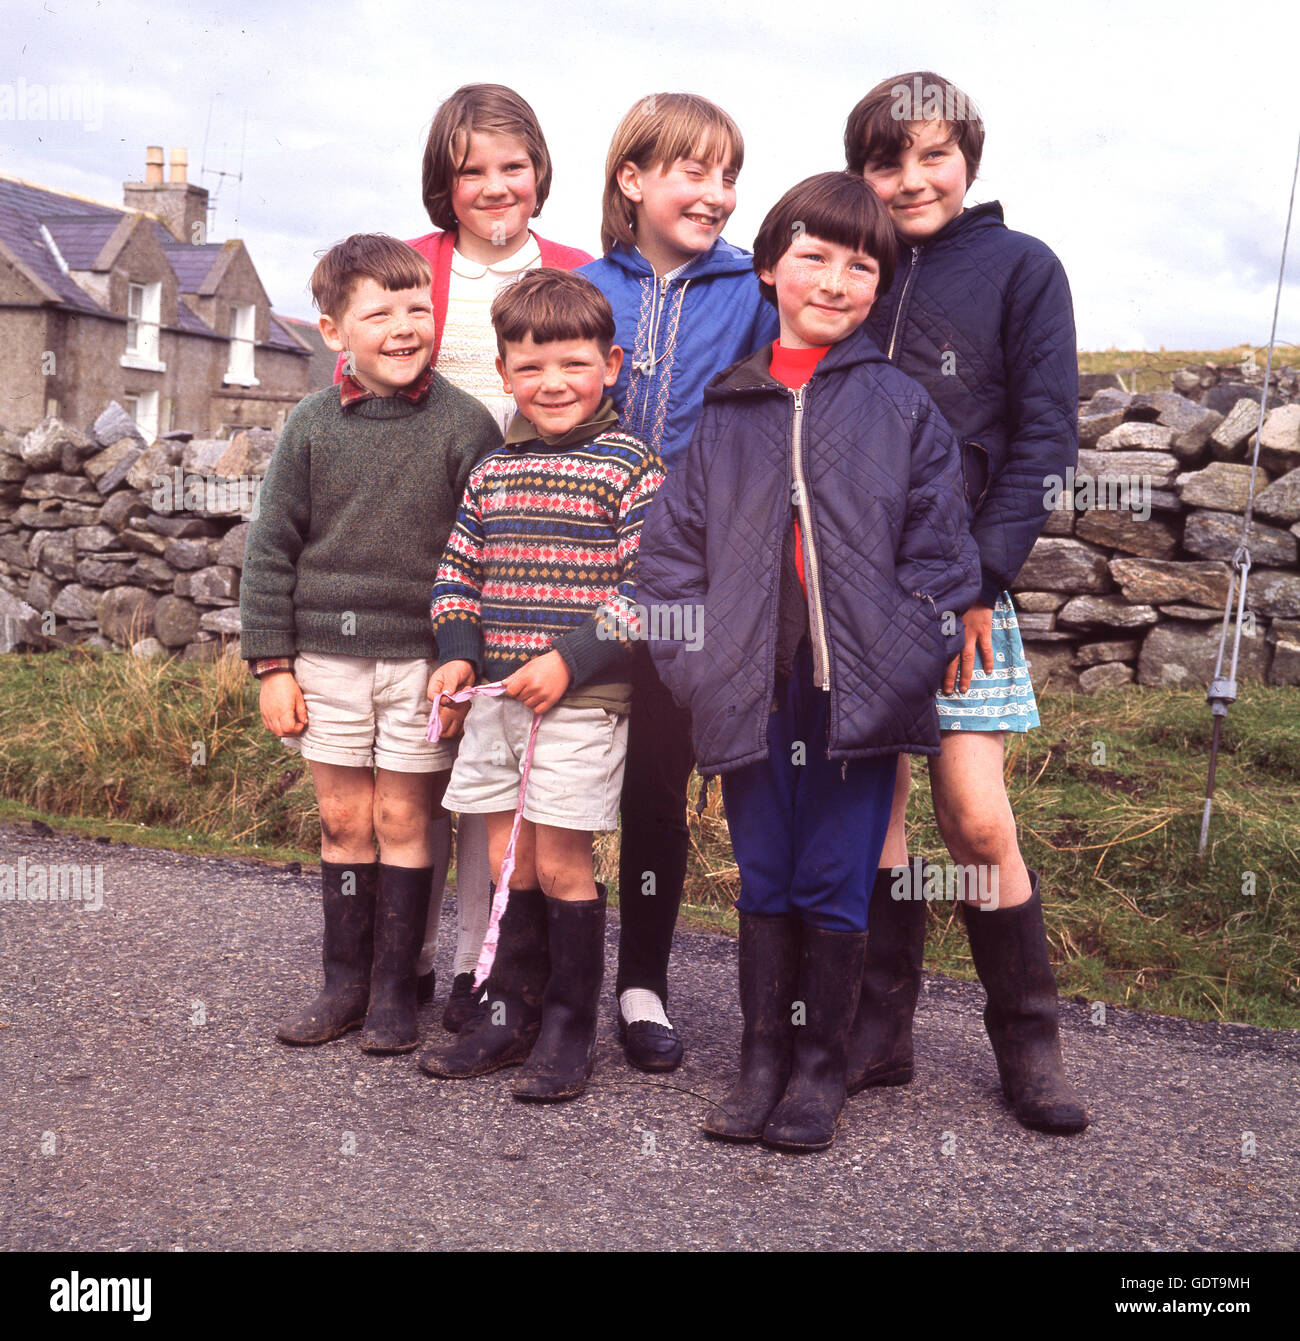 In den 1970er Jahren steht eine Gruppe glücklicher Kinder, fast alle mit wellington-Stiefeln, zusammen für ihr Foto in der Nähe des Dorfes Callanish auf der Isle of Lewis, der größten Insel der Äußeren Hebriden, Highlands, Schottland, Großbritannien, in diesem historischen Bild, das von J Allan Cash aufgenommen wurde. Stockfoto